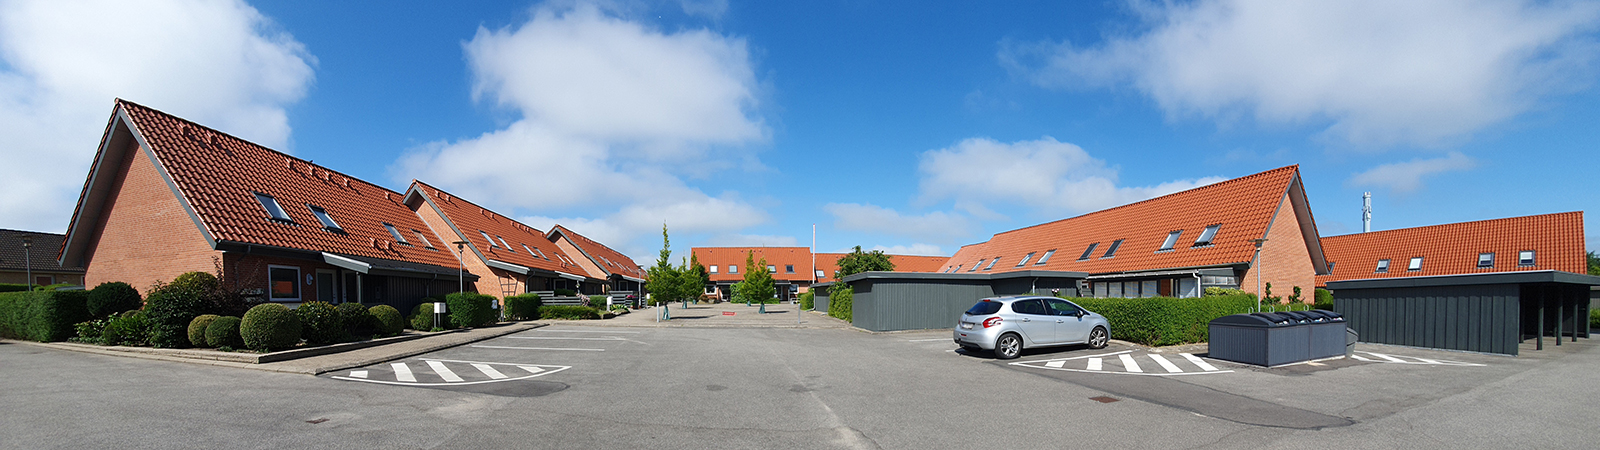 Andelsboligforening Jættestuen, 9230 Svenstrup